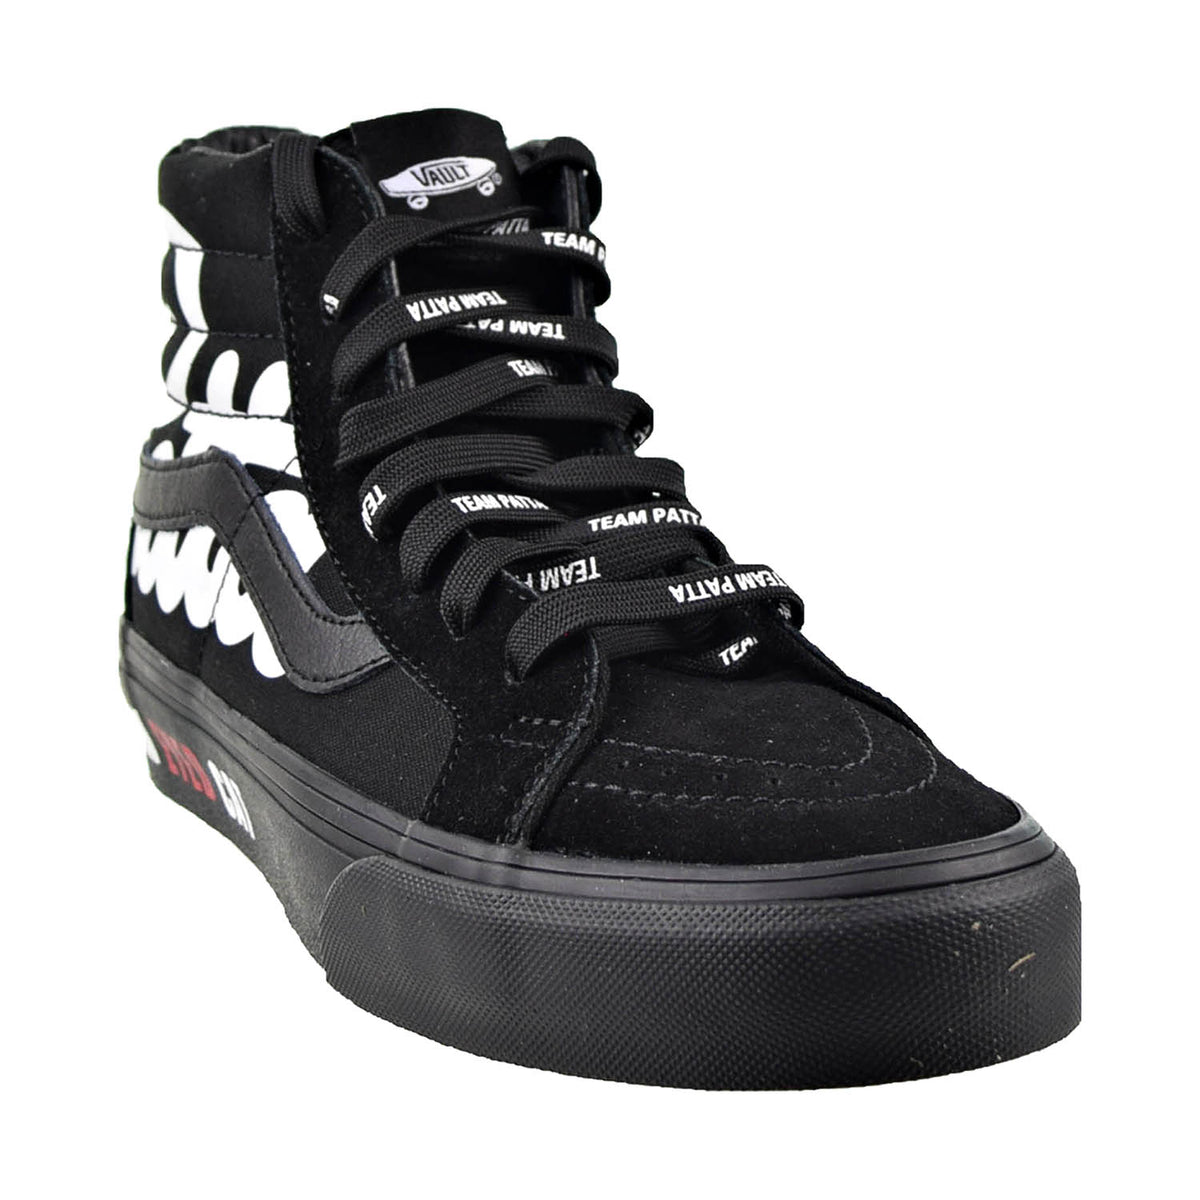 Vans x Patta SK8-Hi Reissue Vlt Lx Men's Shoes Black-White